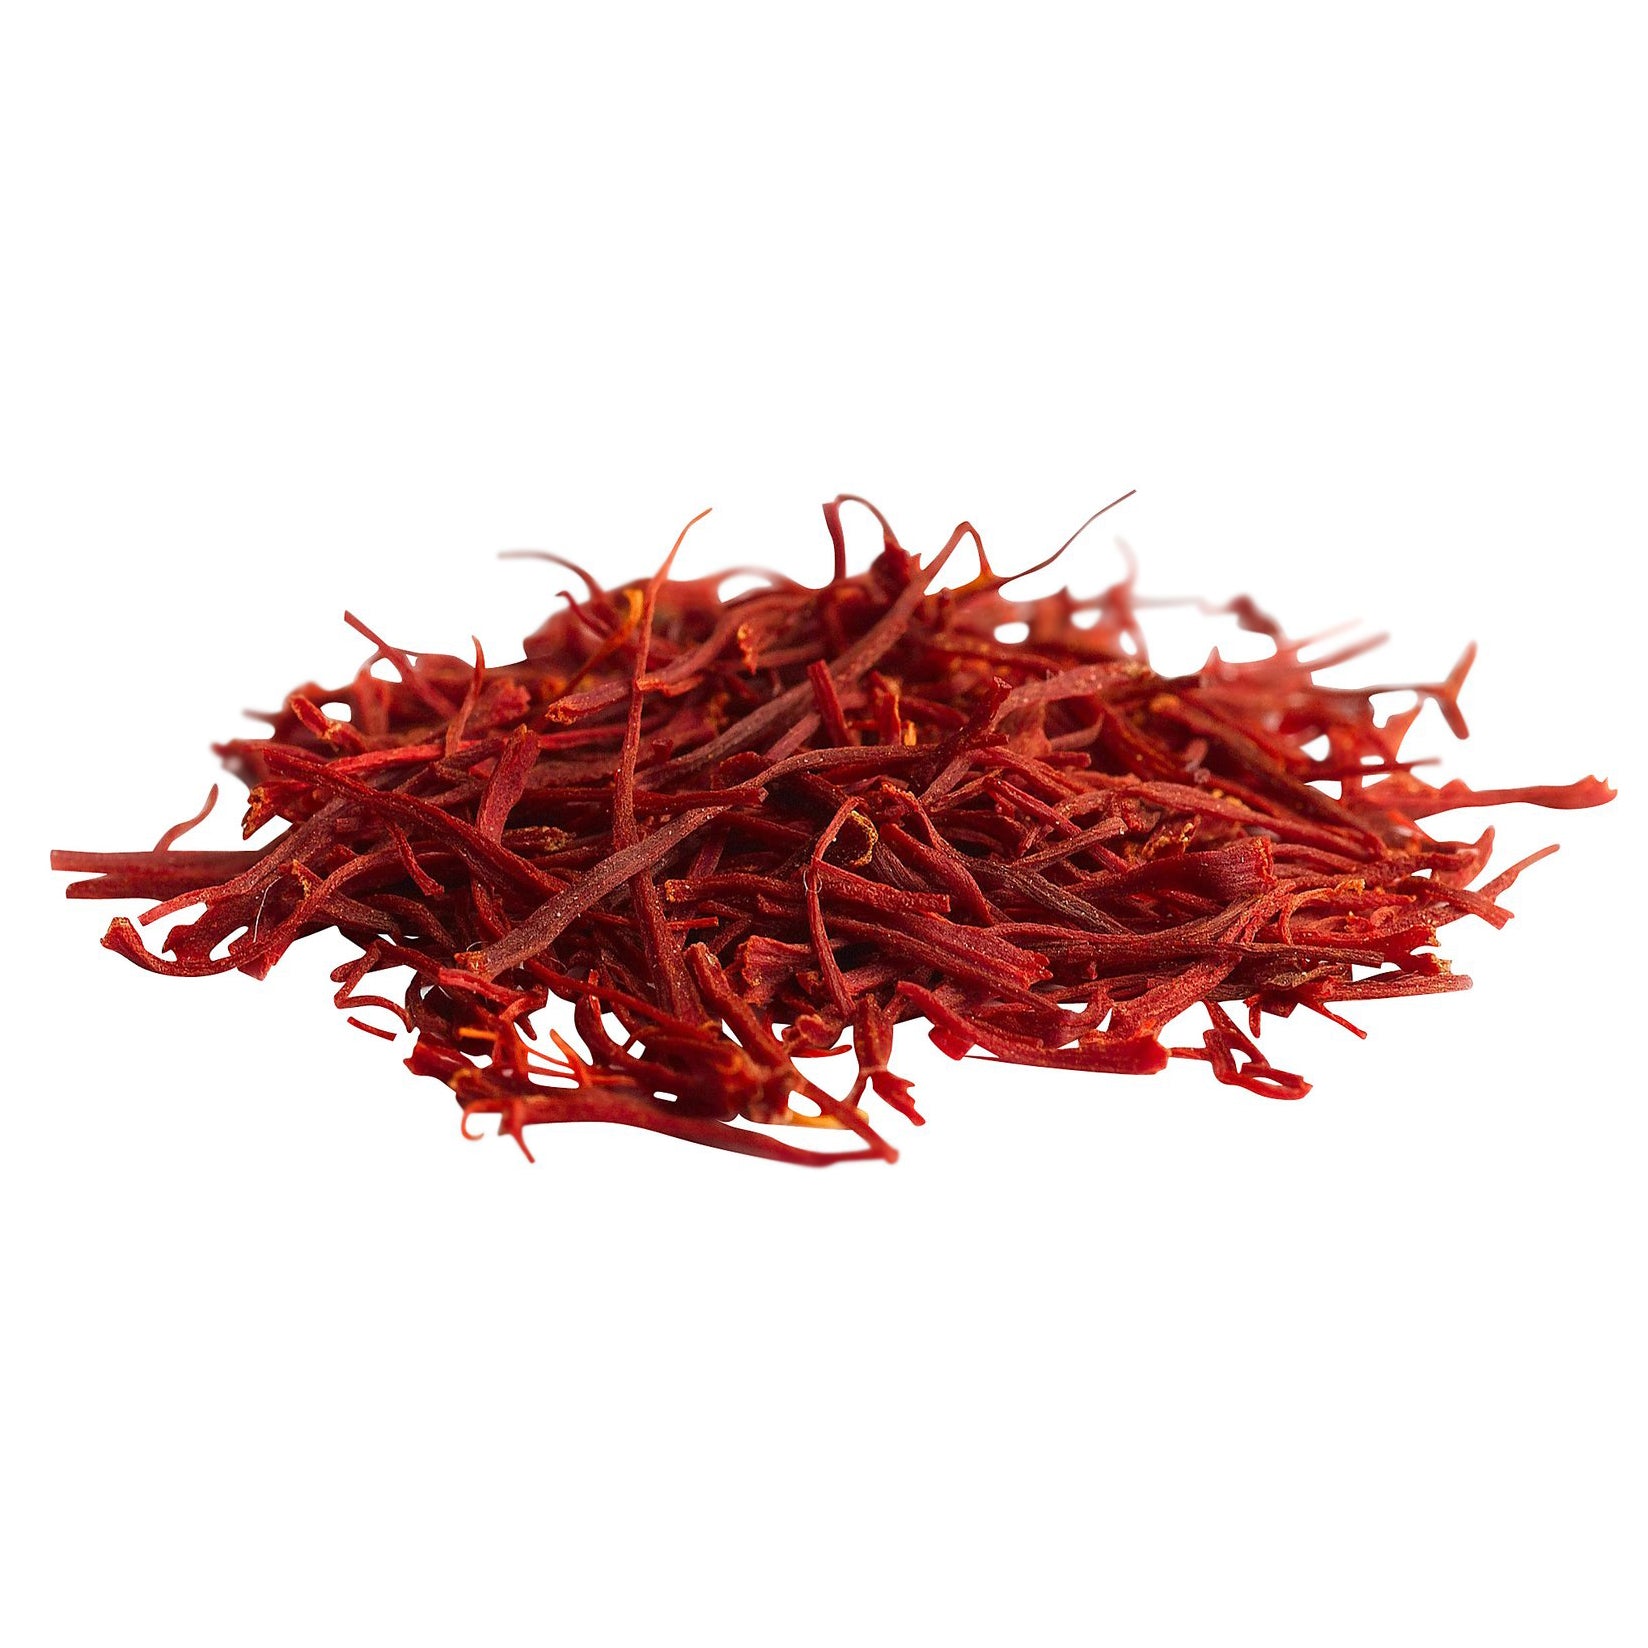 Saffron Threads Red Stick Spice Company